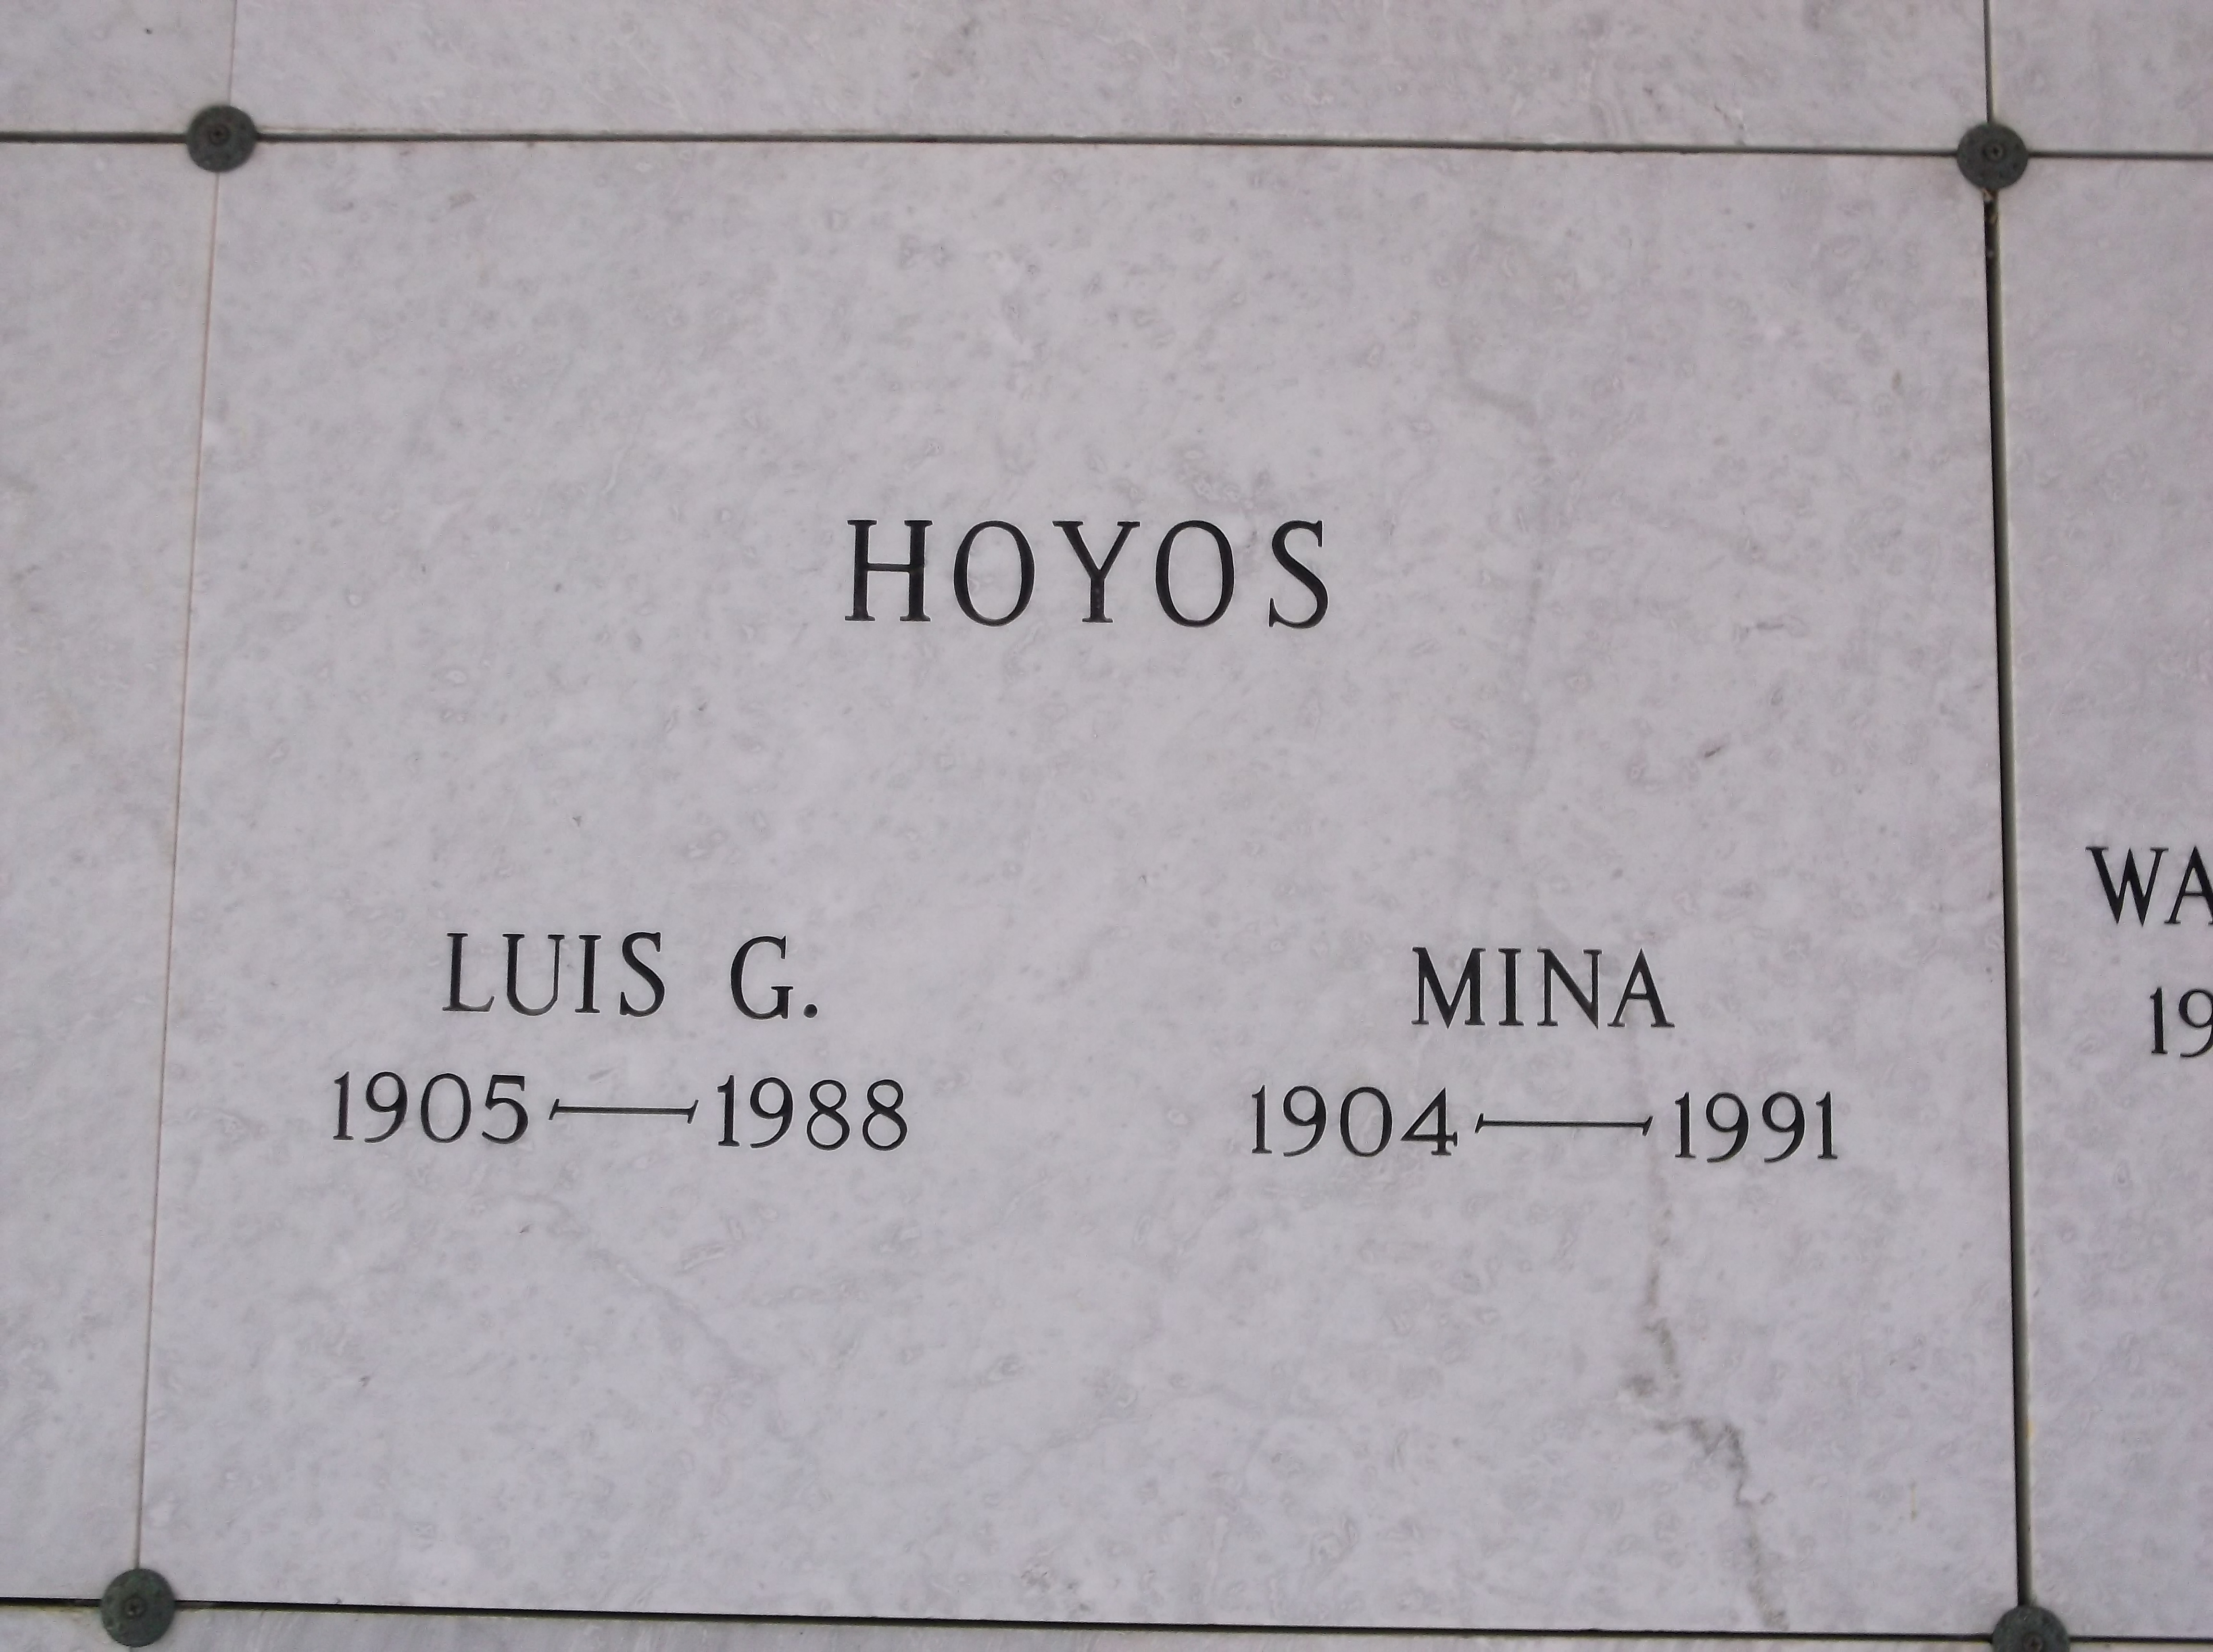 Luis G Hoyos